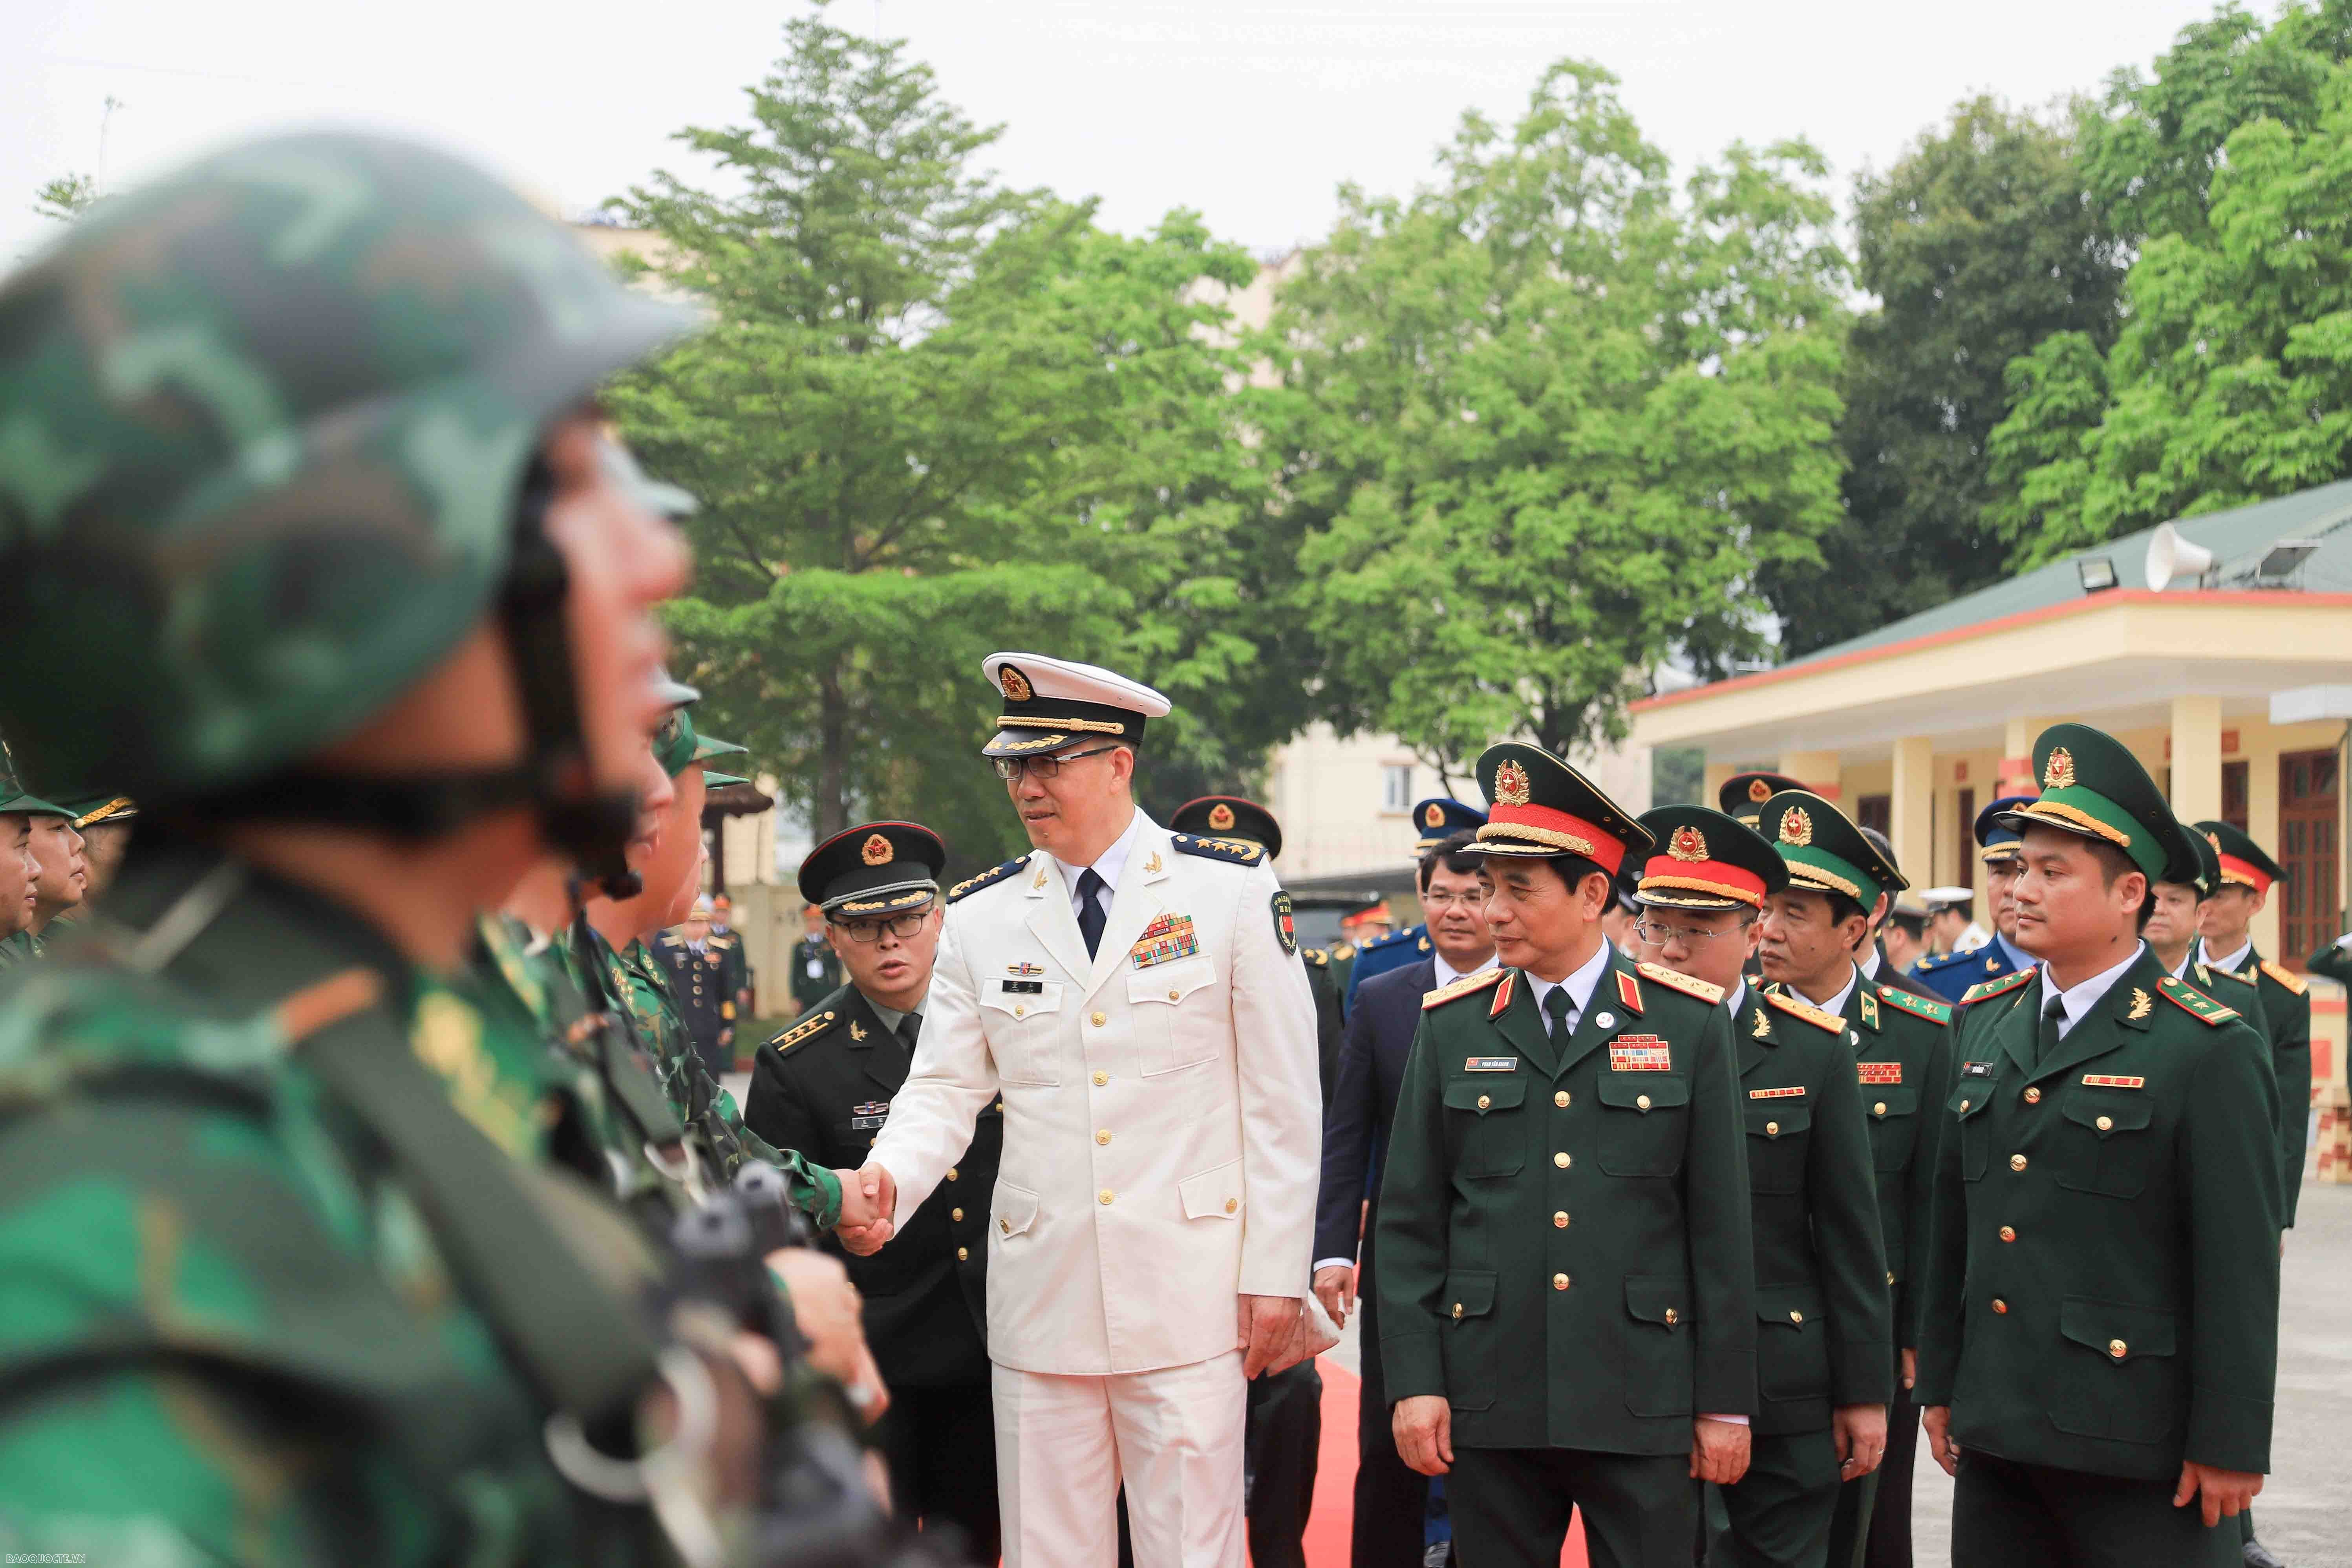 Giao lưu hữu nghị quốc phòng biên giới Việt Nam   Trung Quốc lần thứ 8 chính thức bắt đầu